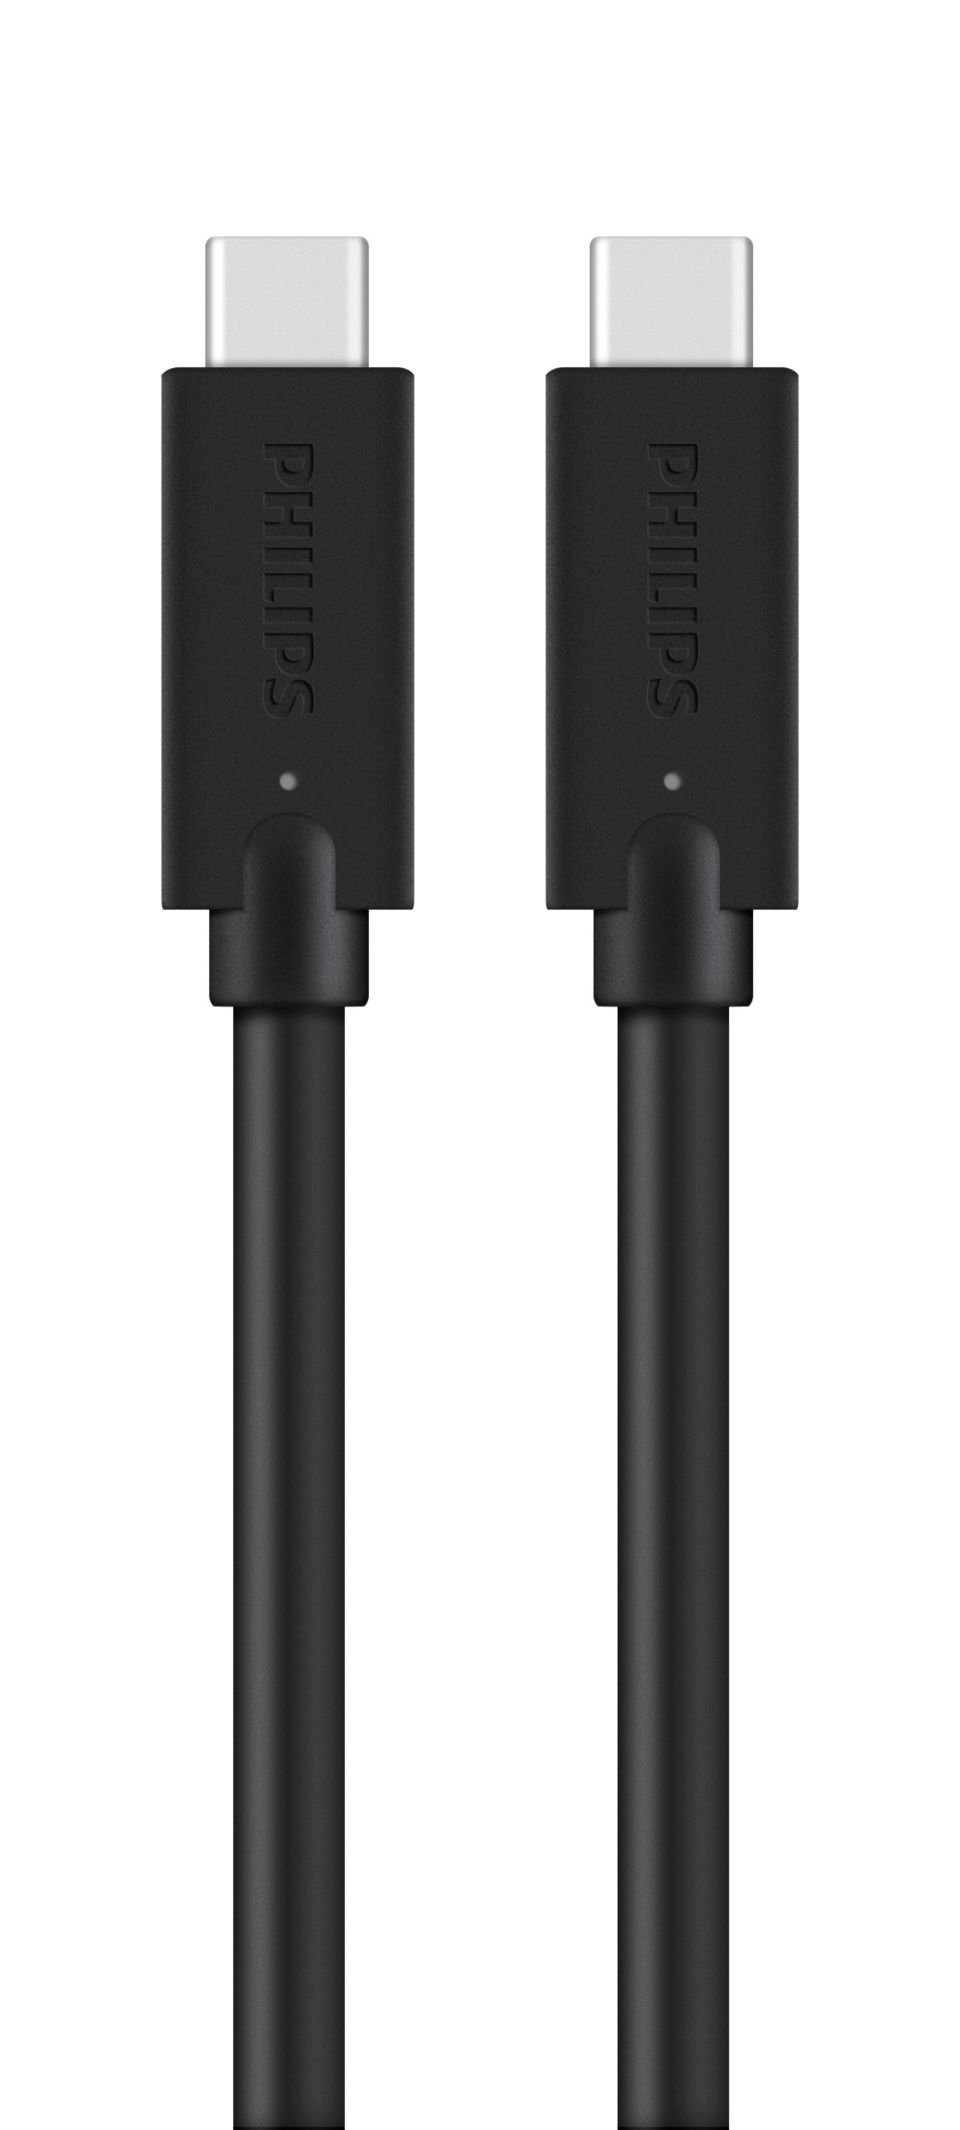 كبل مضفور للتحويل من USB-C إلى USB-C